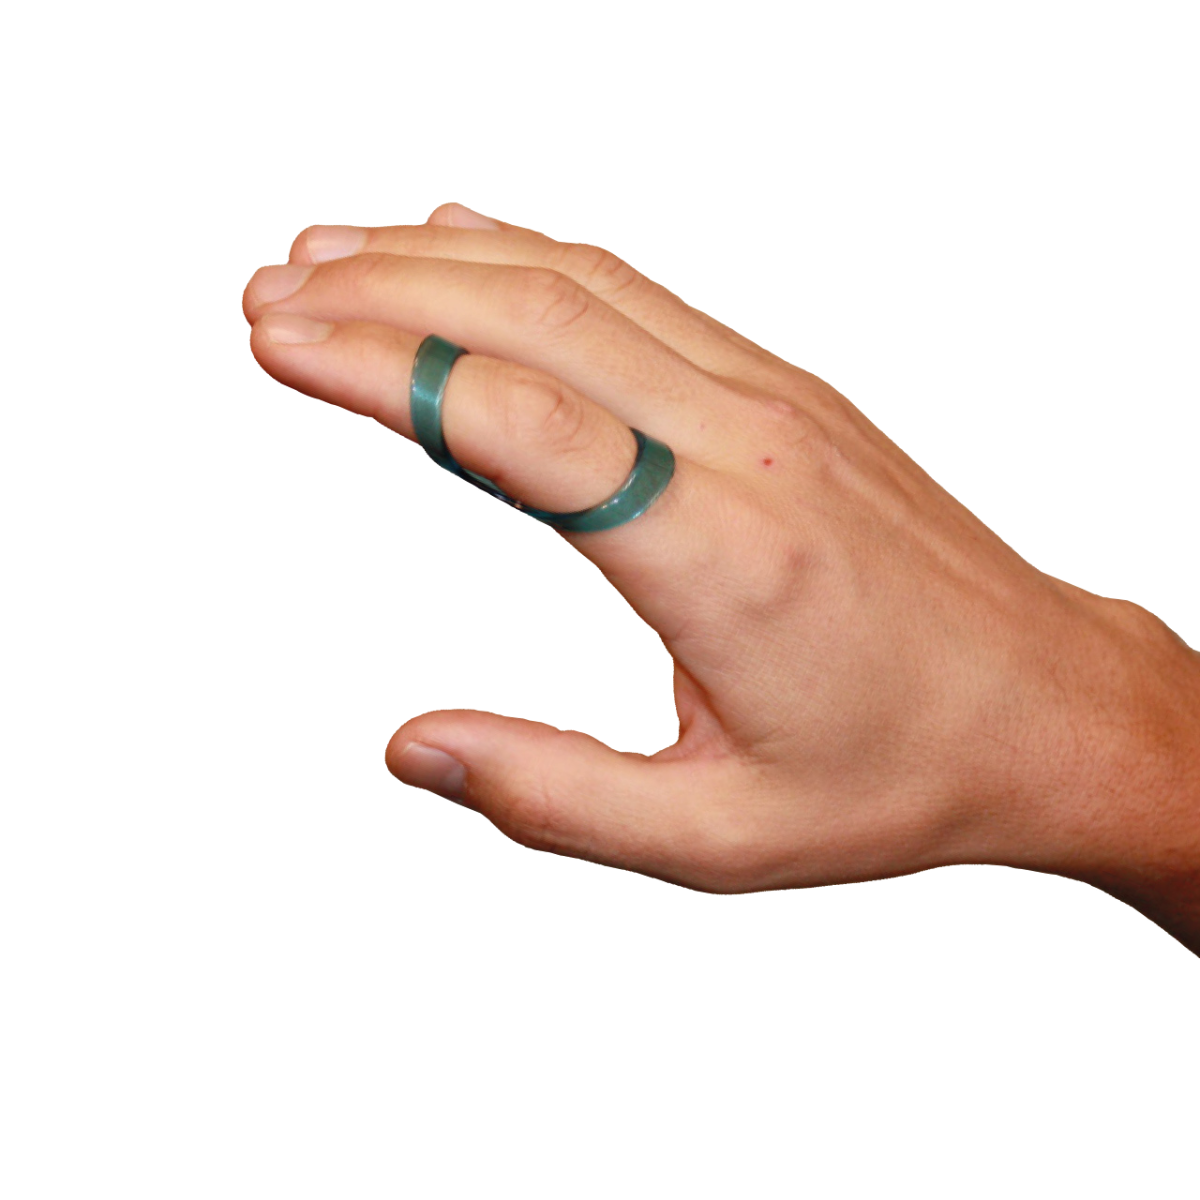 Fixační ortéza na prst krátká transparentní CATELL, vel. 26, C5180*26